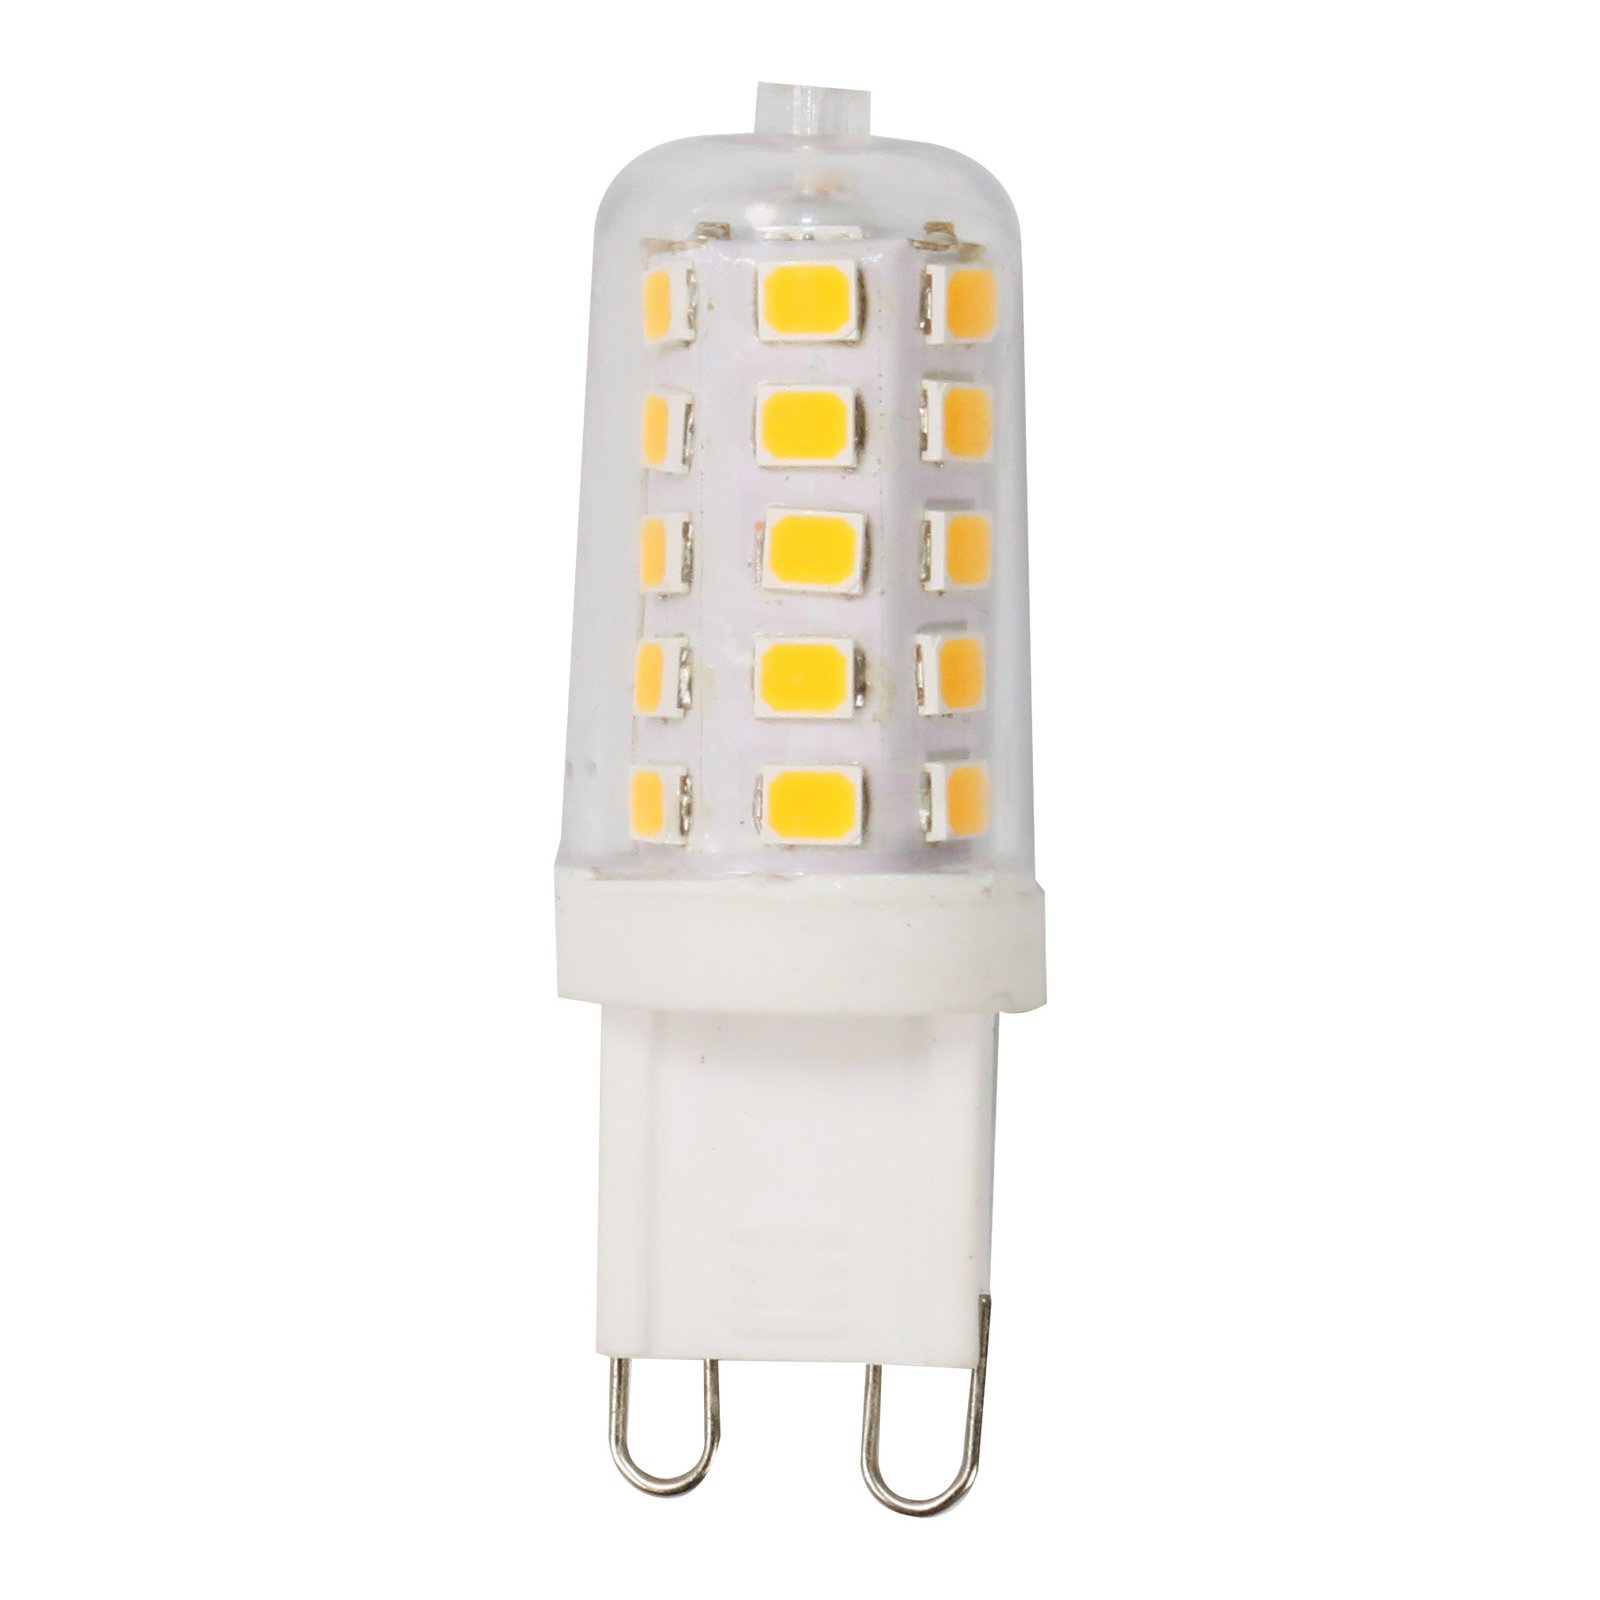 Bi-pin LED bulb G9 3 W full spectrum 2,700 K Ra97